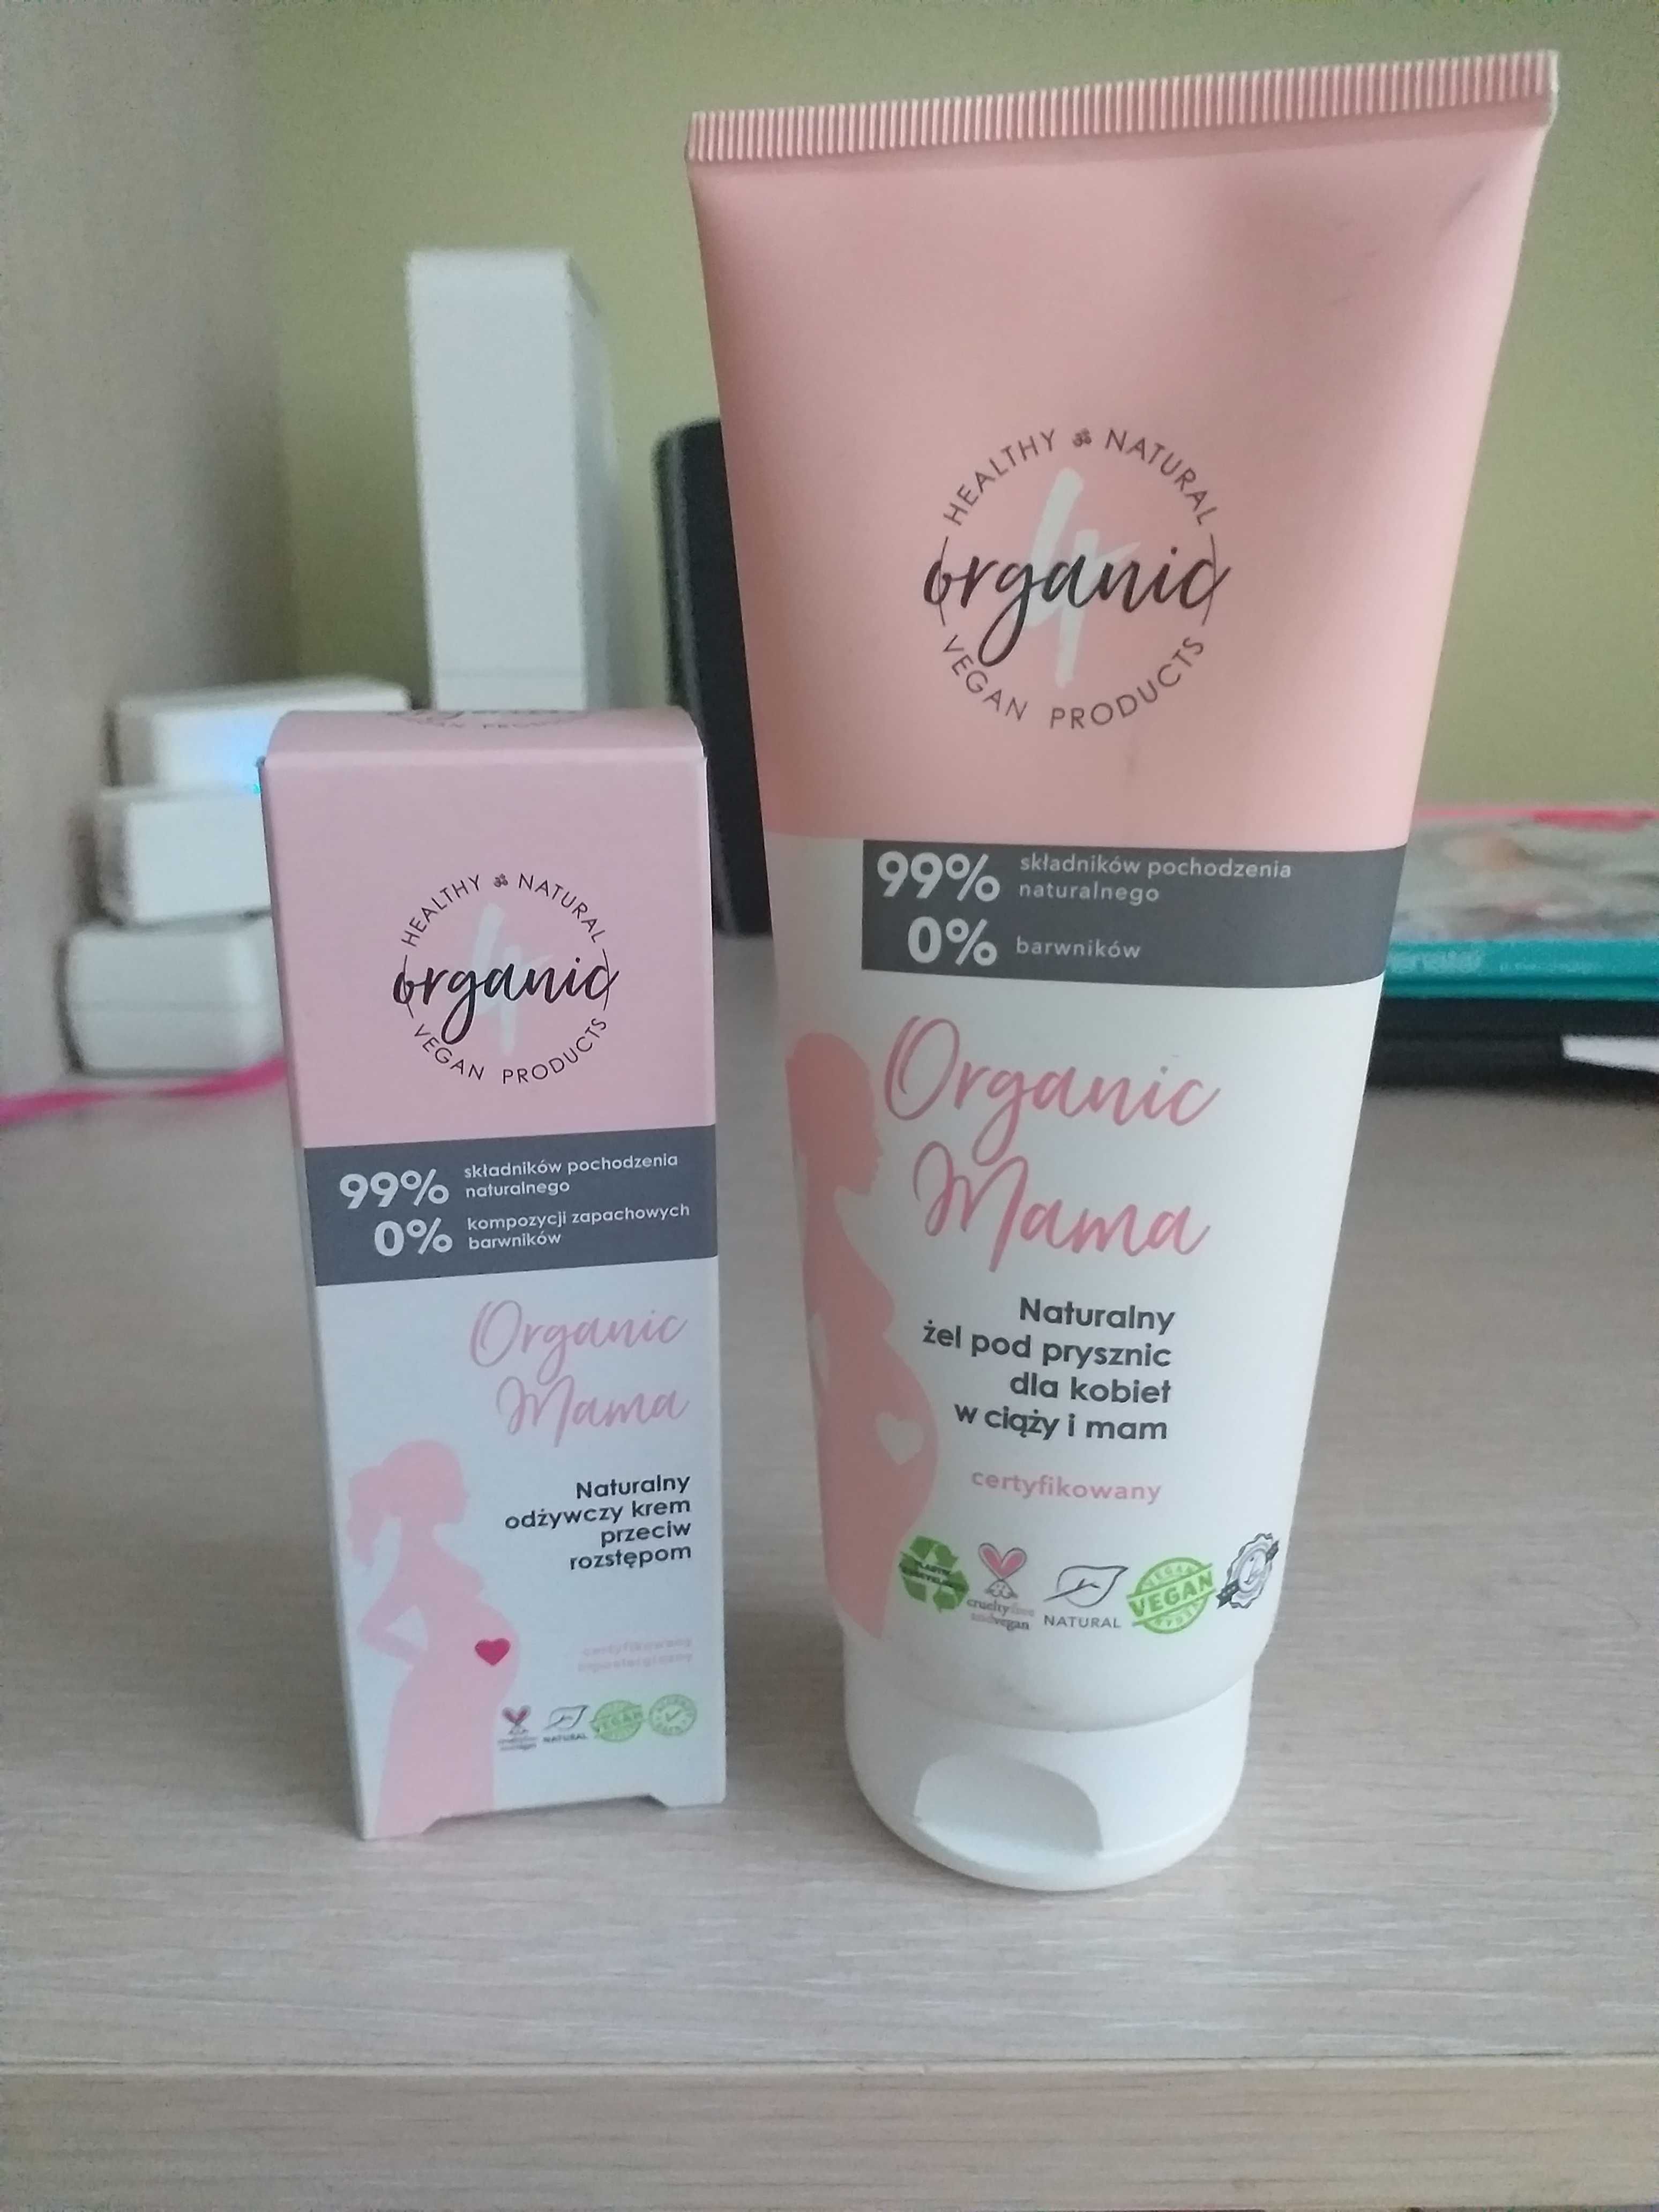 Super zestaw naturalnych kosmetyków Organic dla kobiet w ciąży !